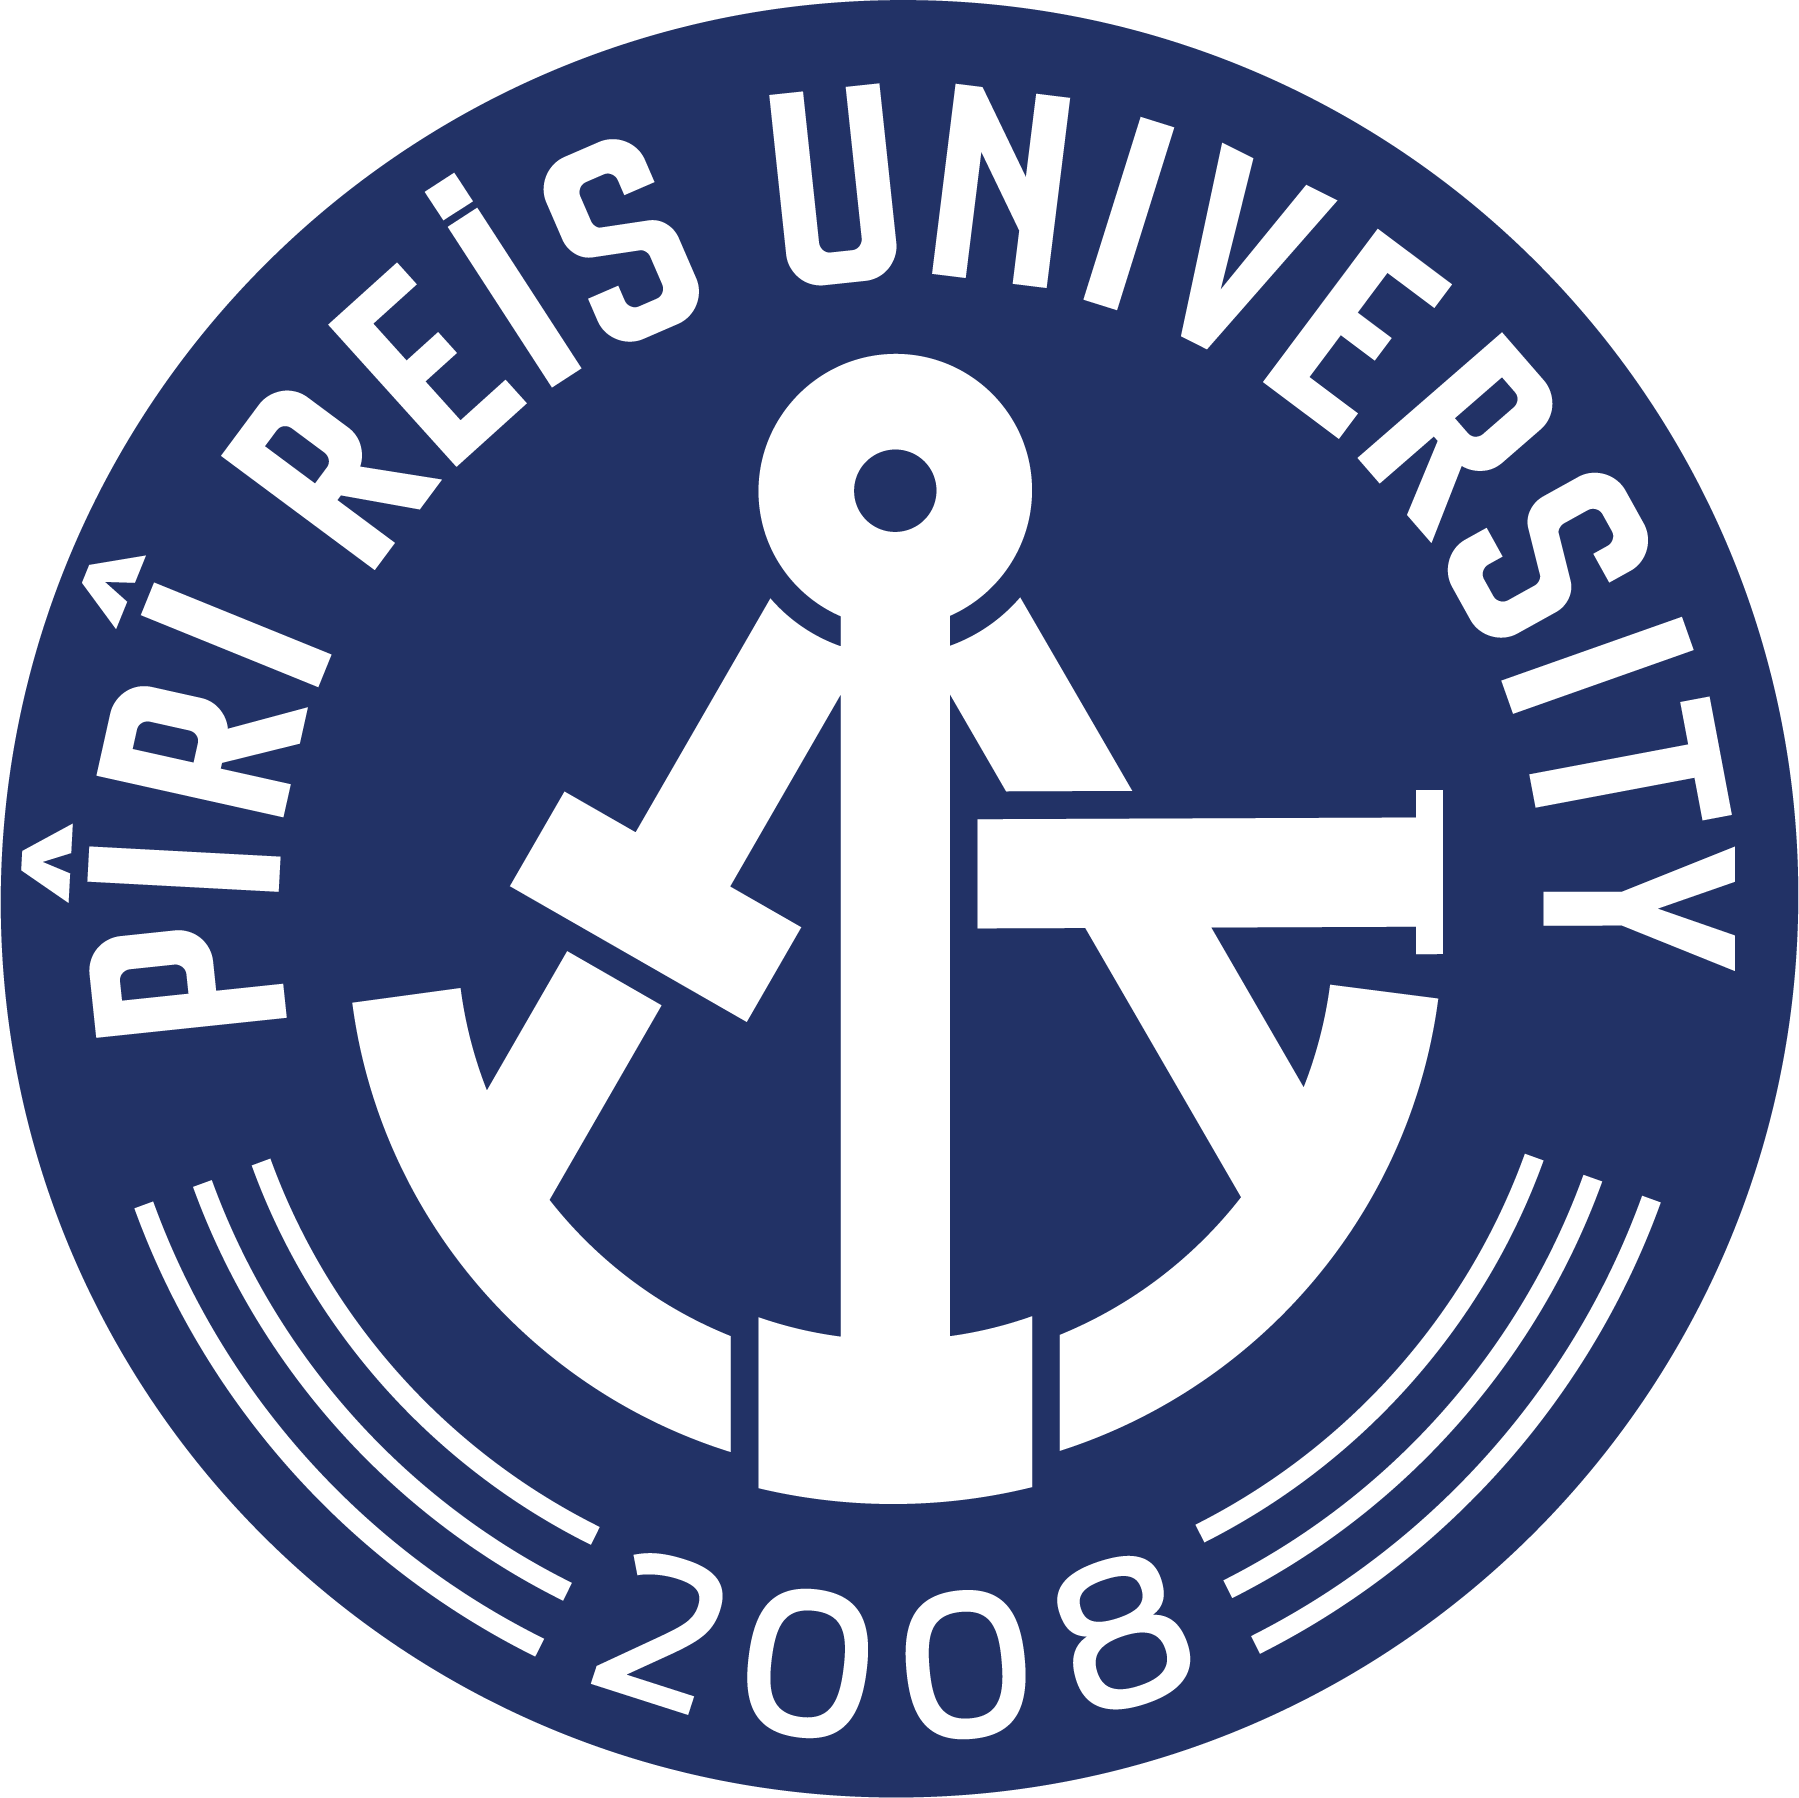 1. Piri Reis Üniversitesi